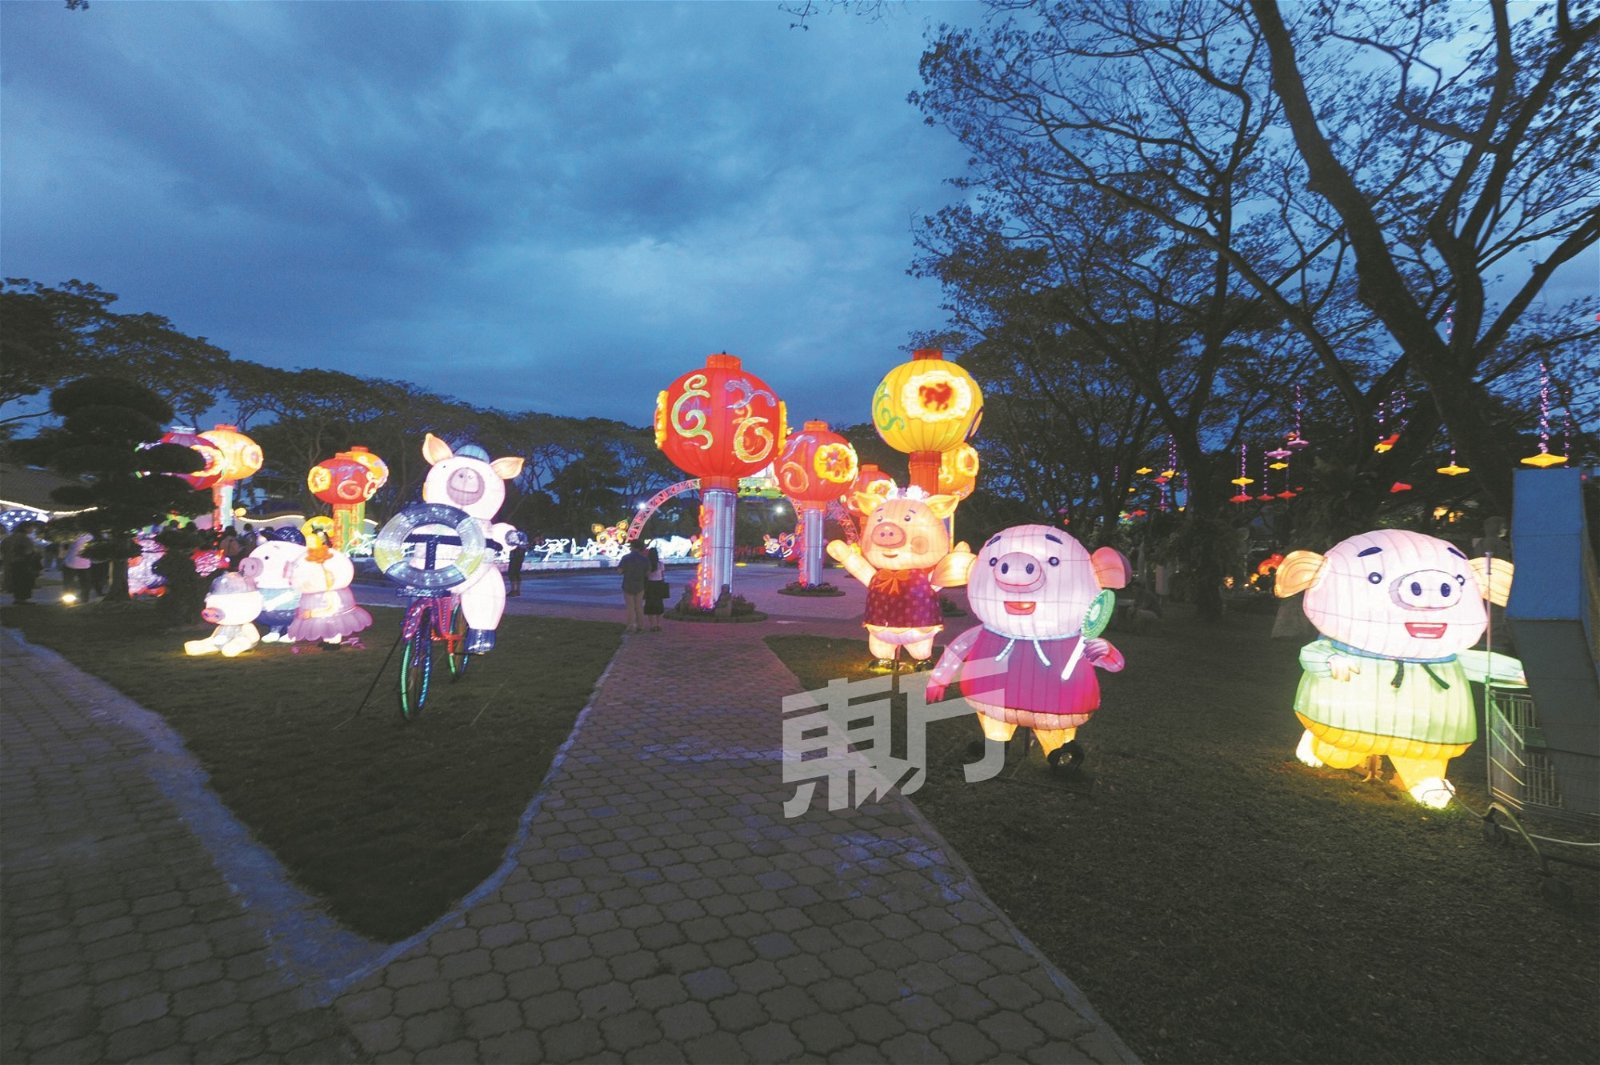 入夜后的东禅寺在猪型花灯的装饰下增色不少，越夜越美丽。